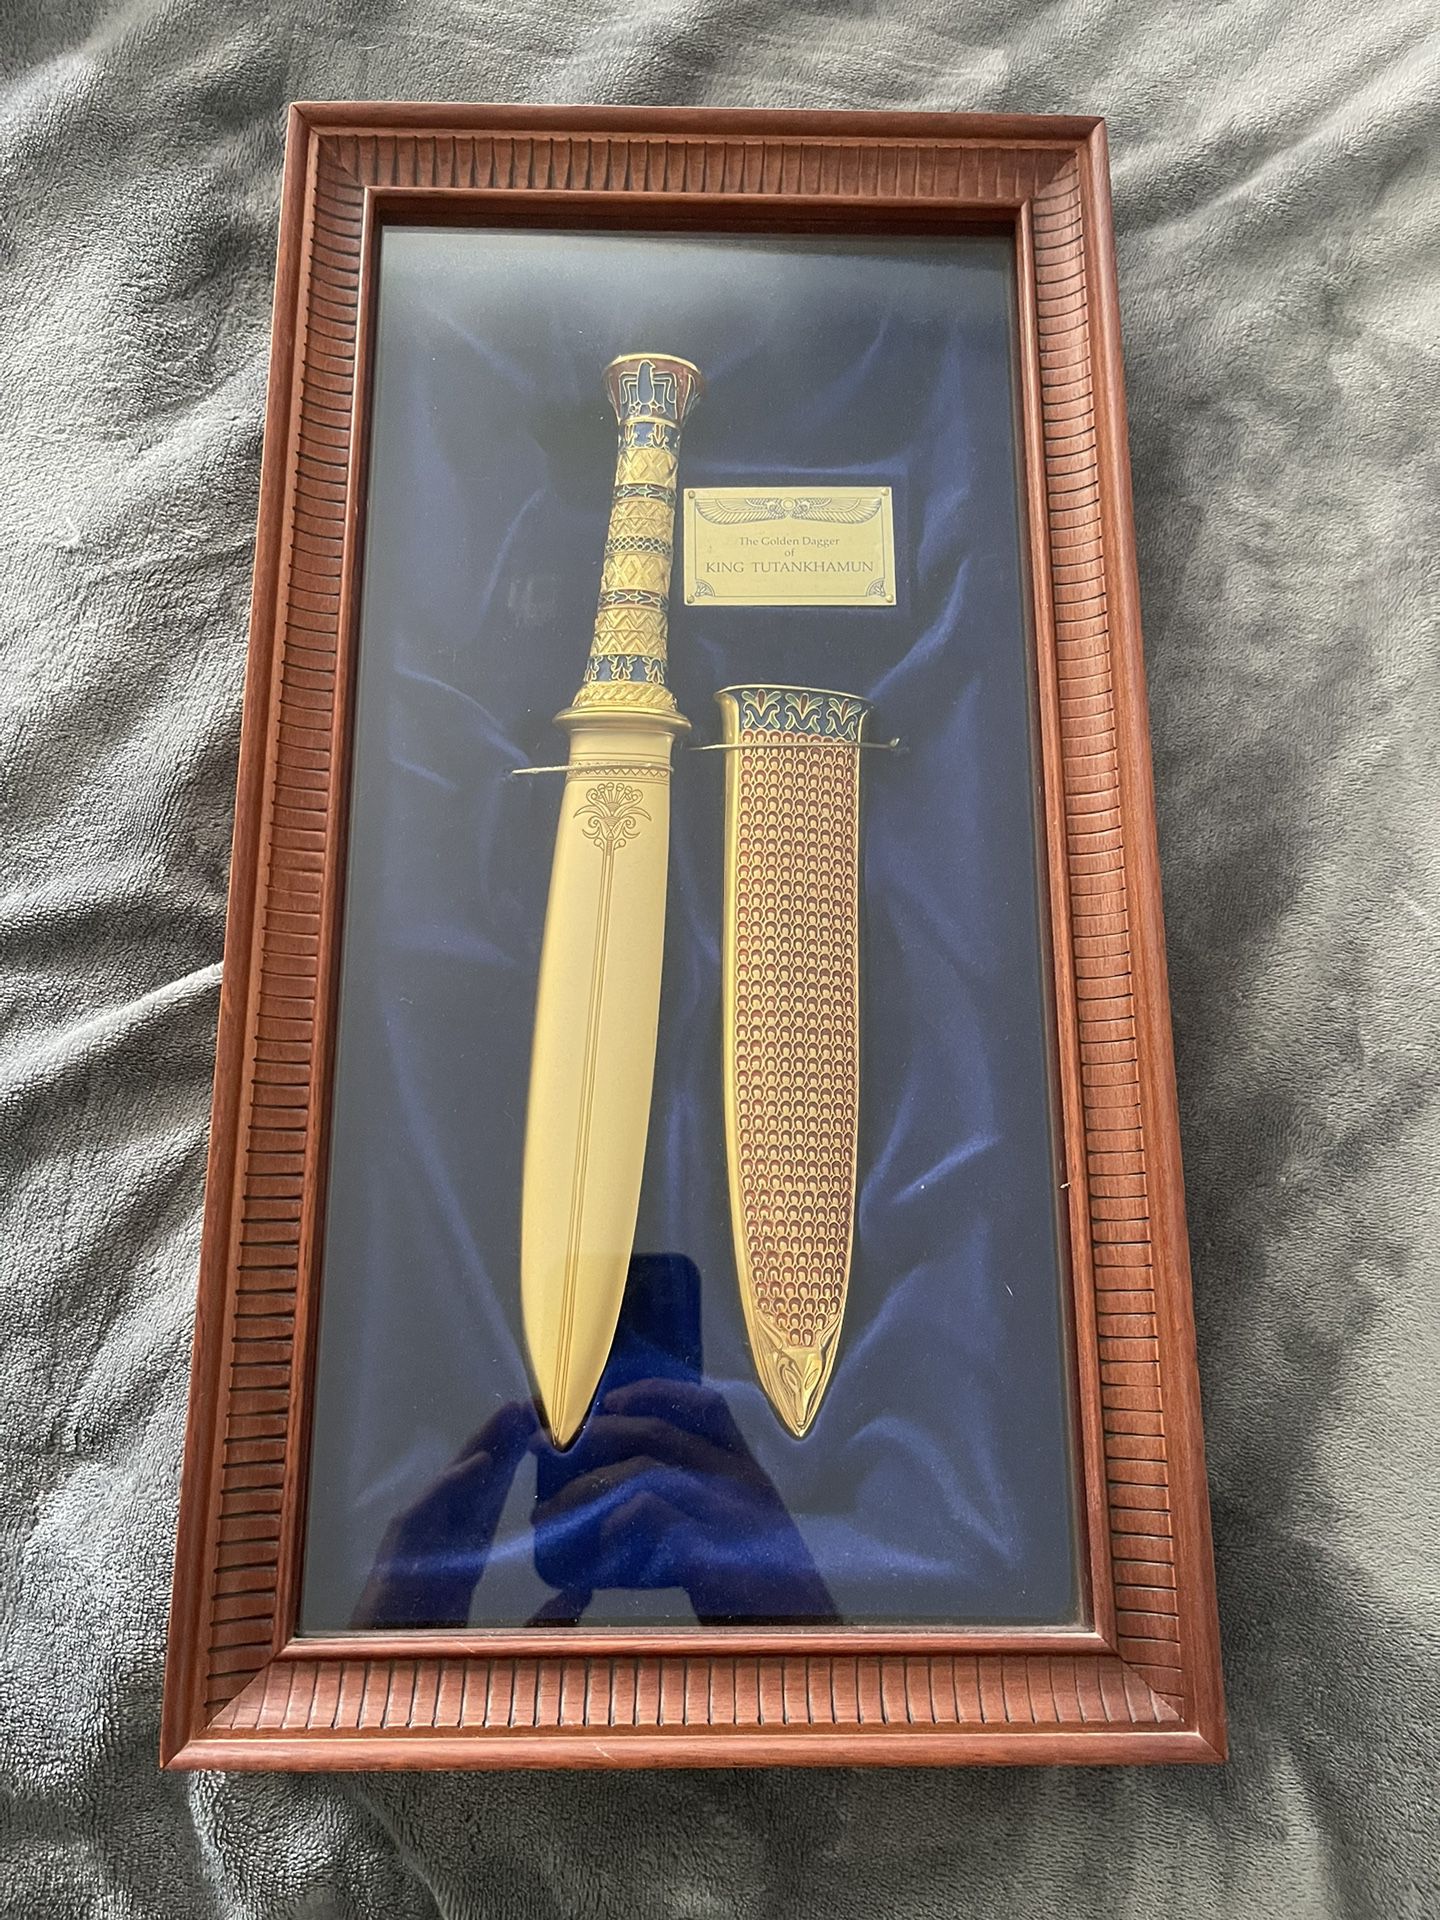 "The Golden Dagger of King Tutankhamun", Franklin Mint. 